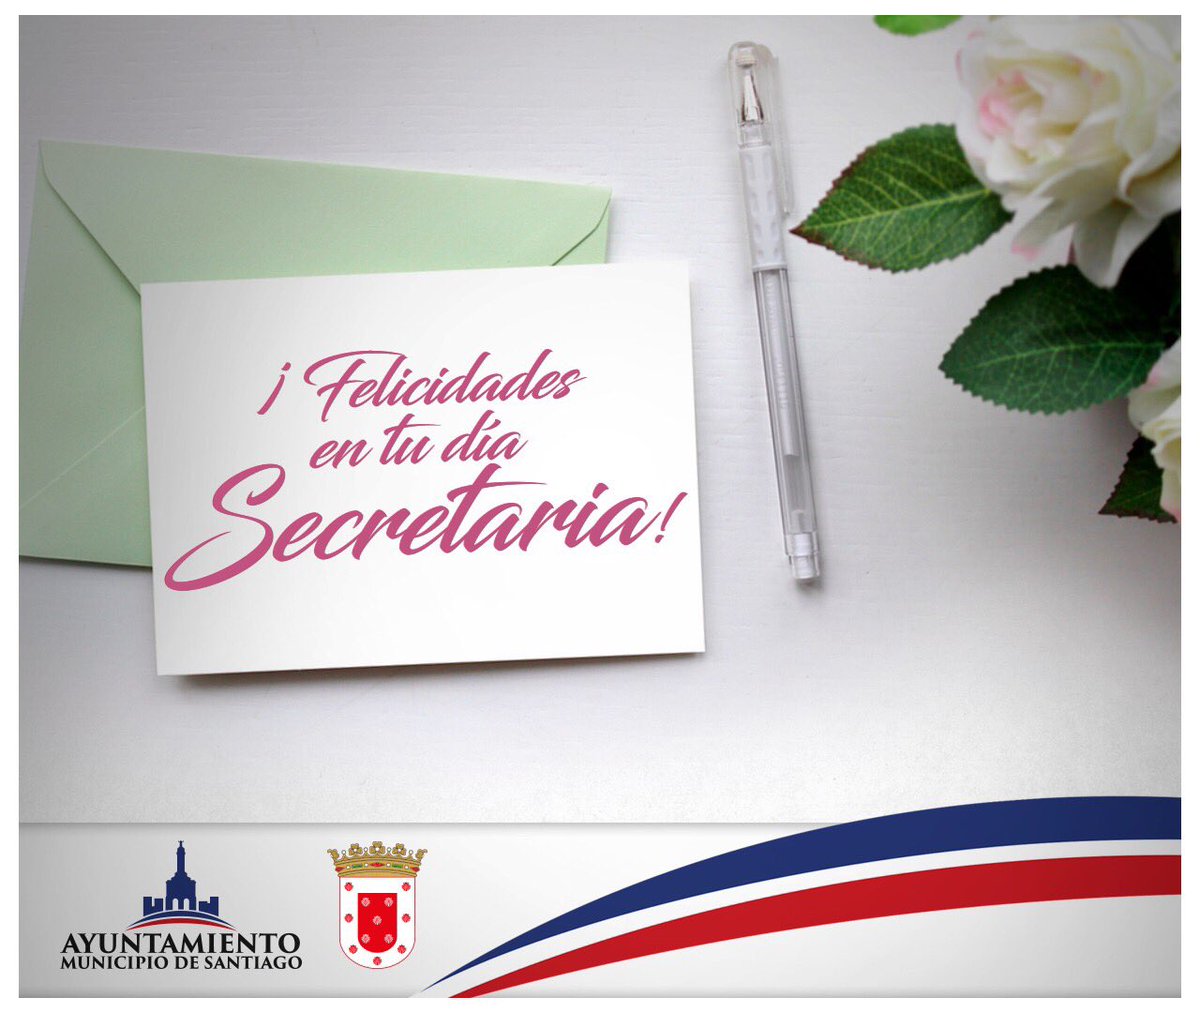 Hoy #DíaDeLasSecretarias queremos reconocer su dedicación y esfuerzo.

¡Felicidades a todas las Secretarias en su Día!

#AlcaldiaDeStgo